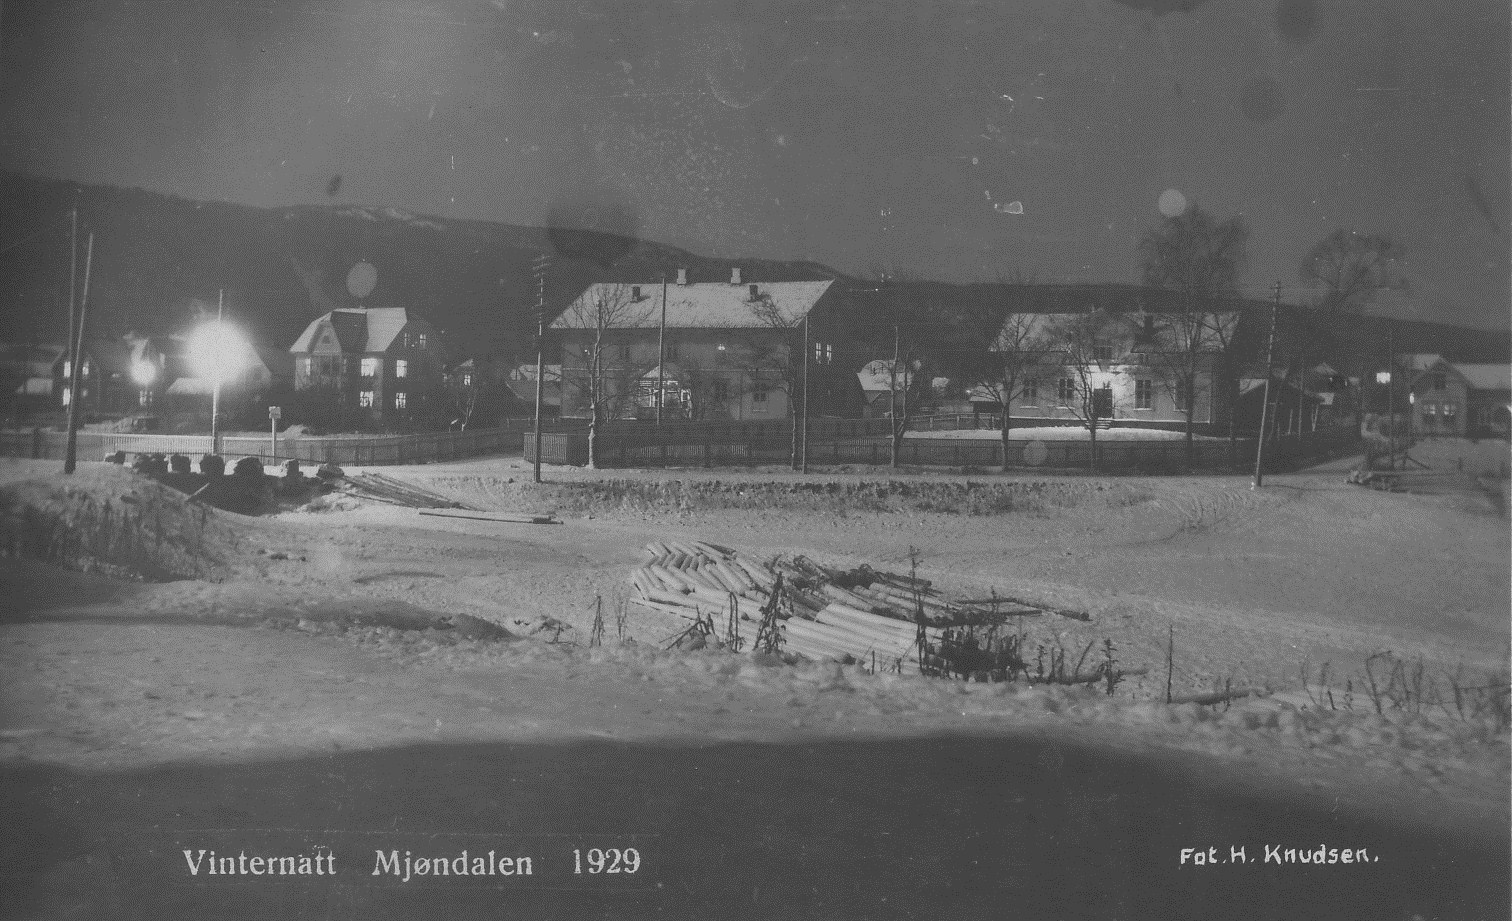 juni 1967. De to bygningene i midten er Mjøndalens gamle skolelokaler fra 1890 (til høyre) og 1900.